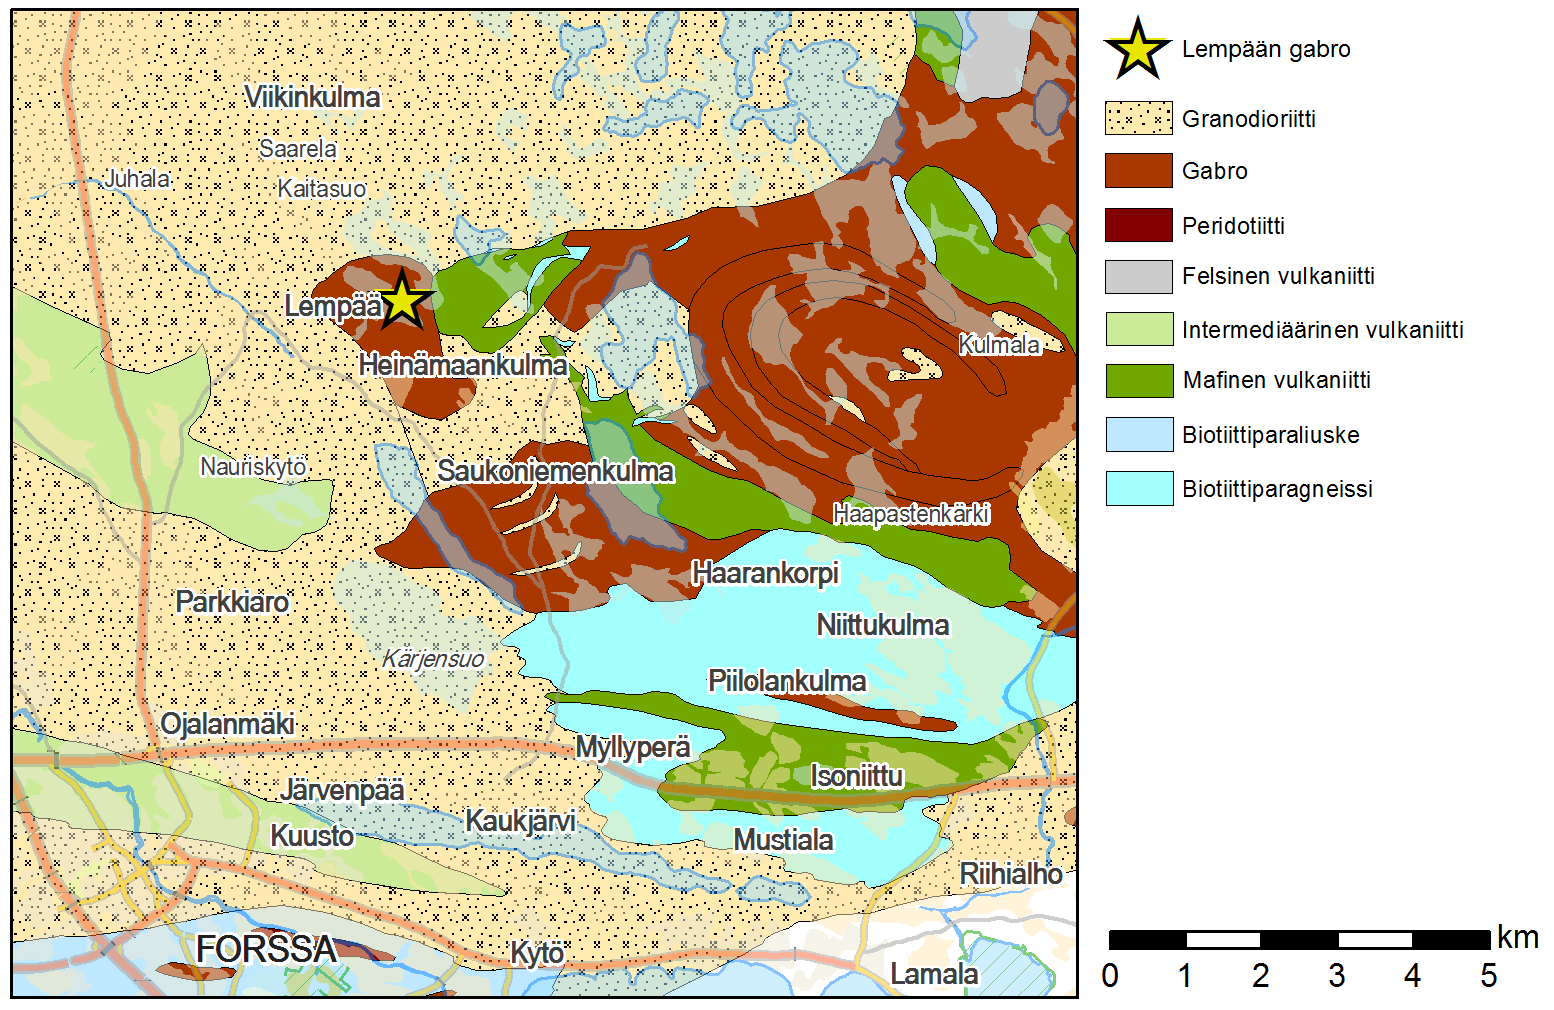 GEOLOGIAN TUTKIMUSKESKUS 62/2016 1 1 JOHDANTO Tammelan ja Forssan kuntien rajalla sijaitseva Lempään gabro (Kuva 1) on ollut vuosina 2013-2015 Geologian tutkimuskeskuksen Etelä-Suomen yksikön